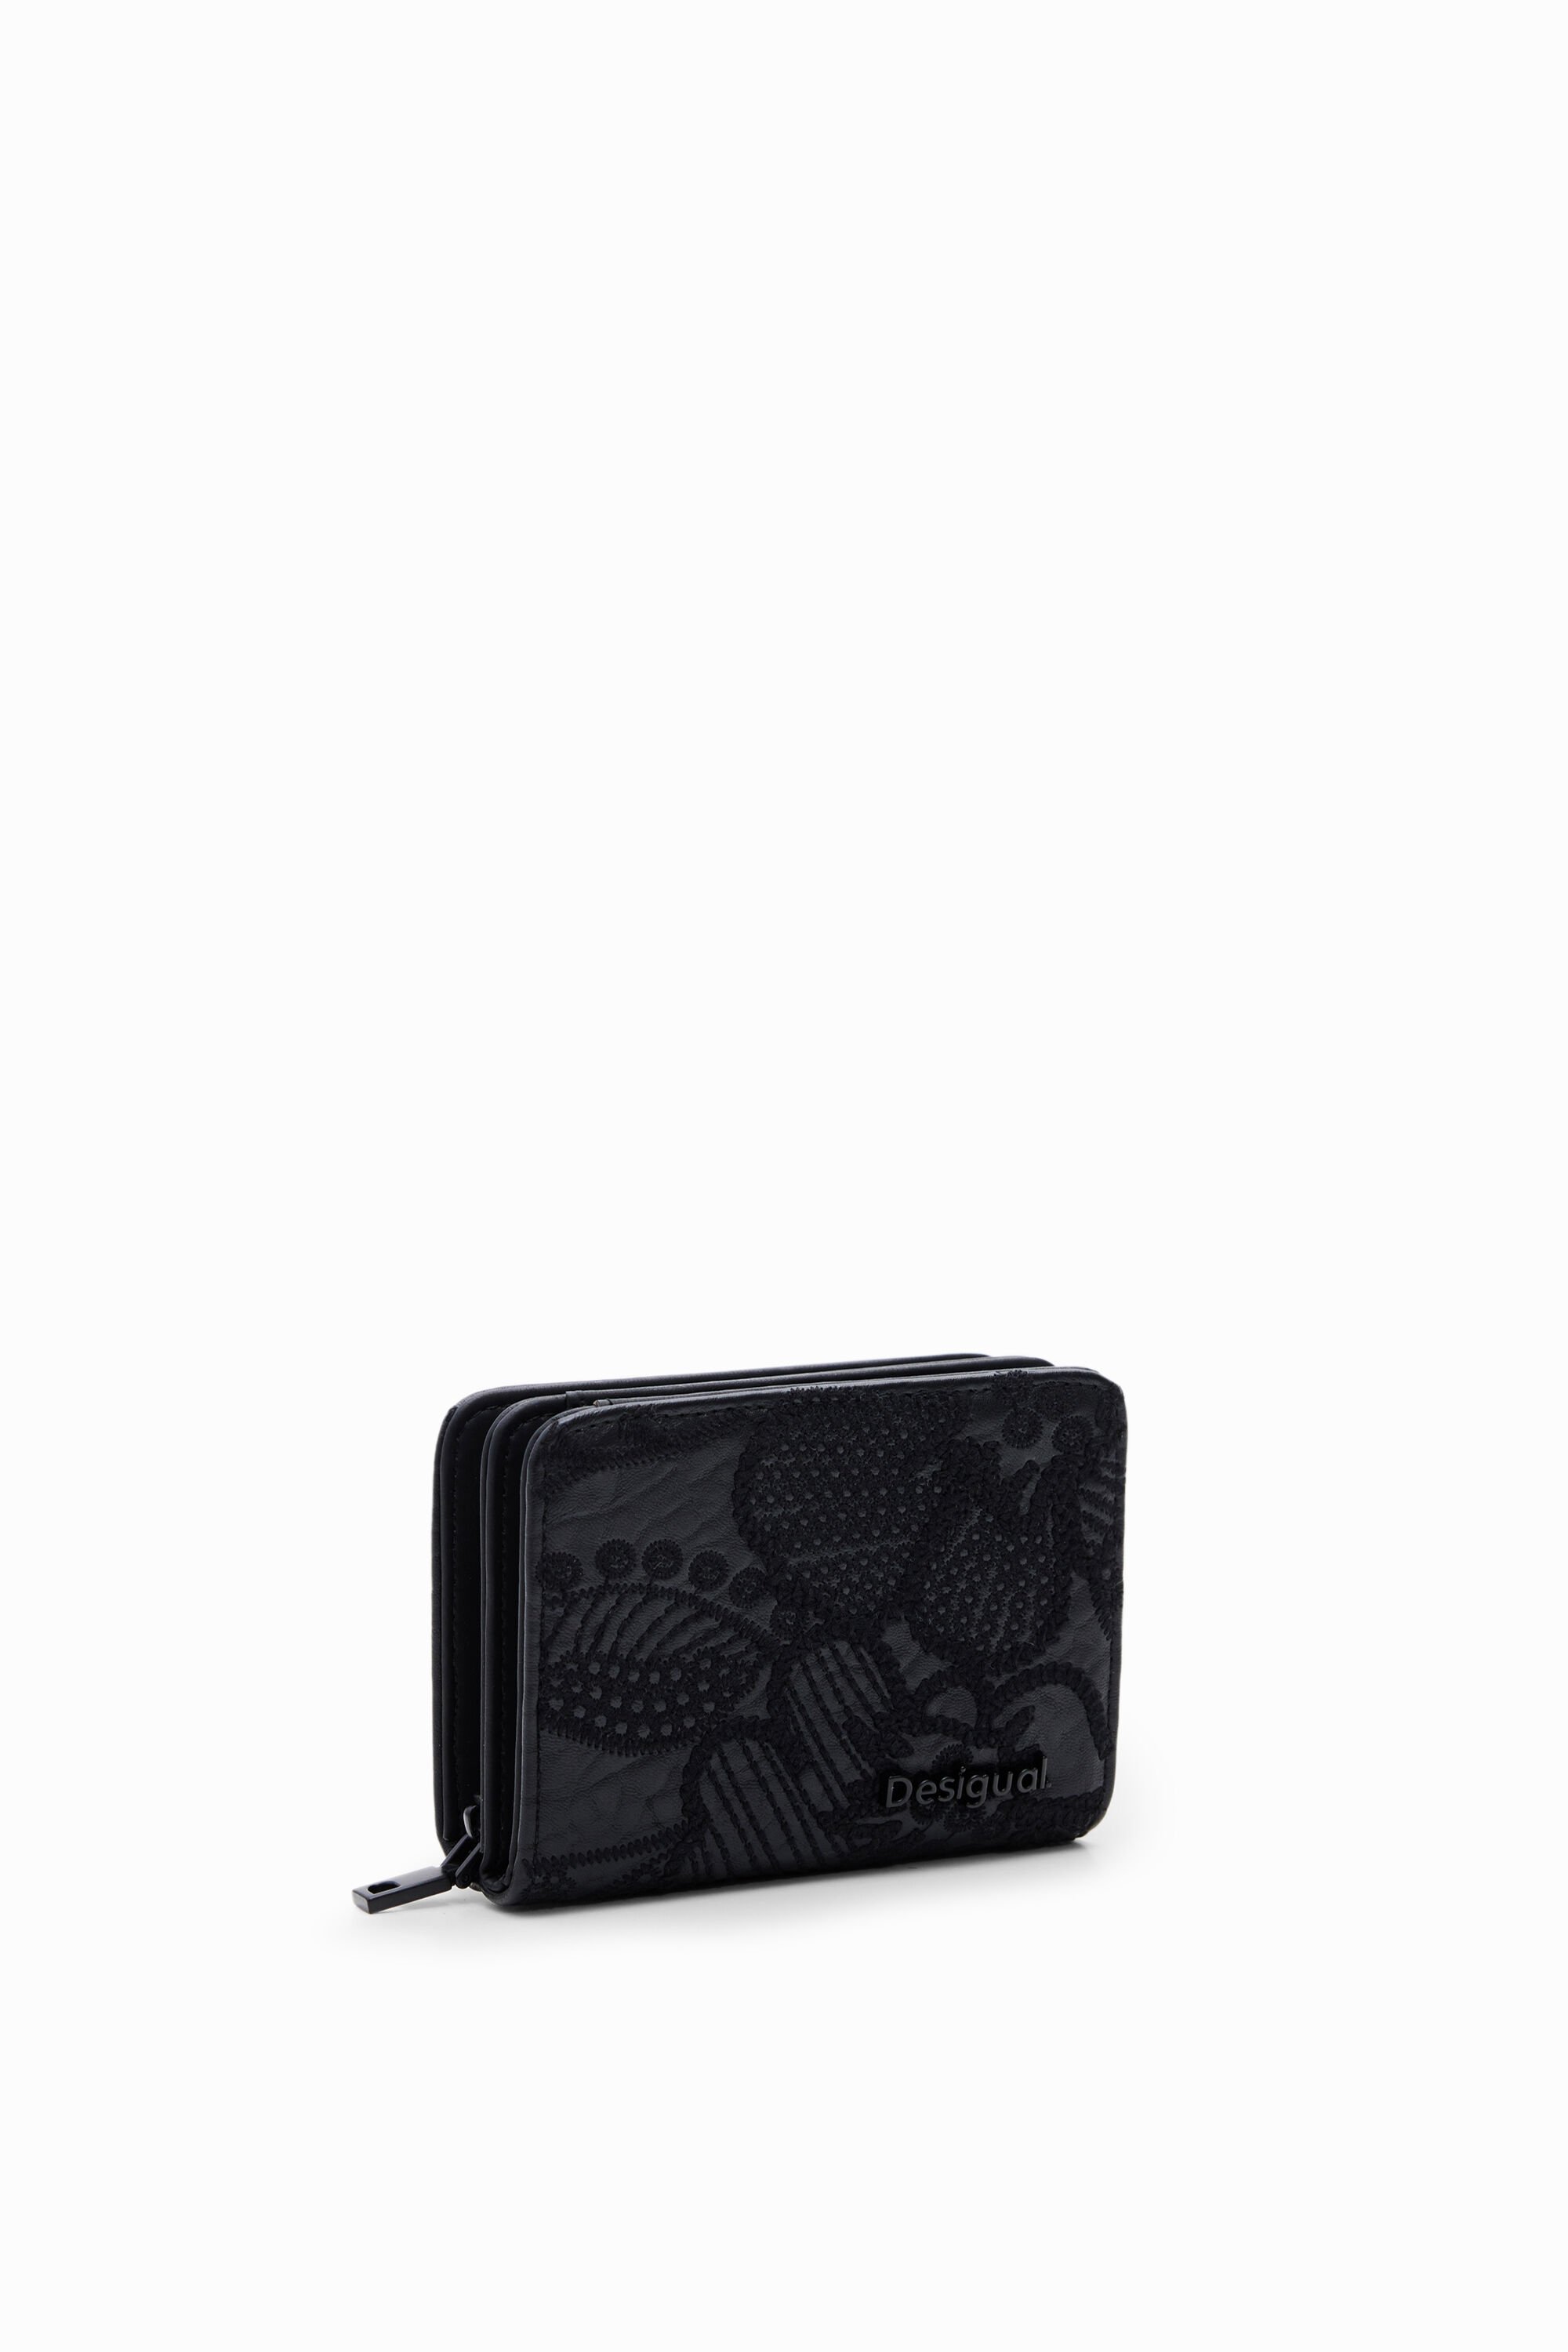 S embroidered floral wallet - BLACK - U